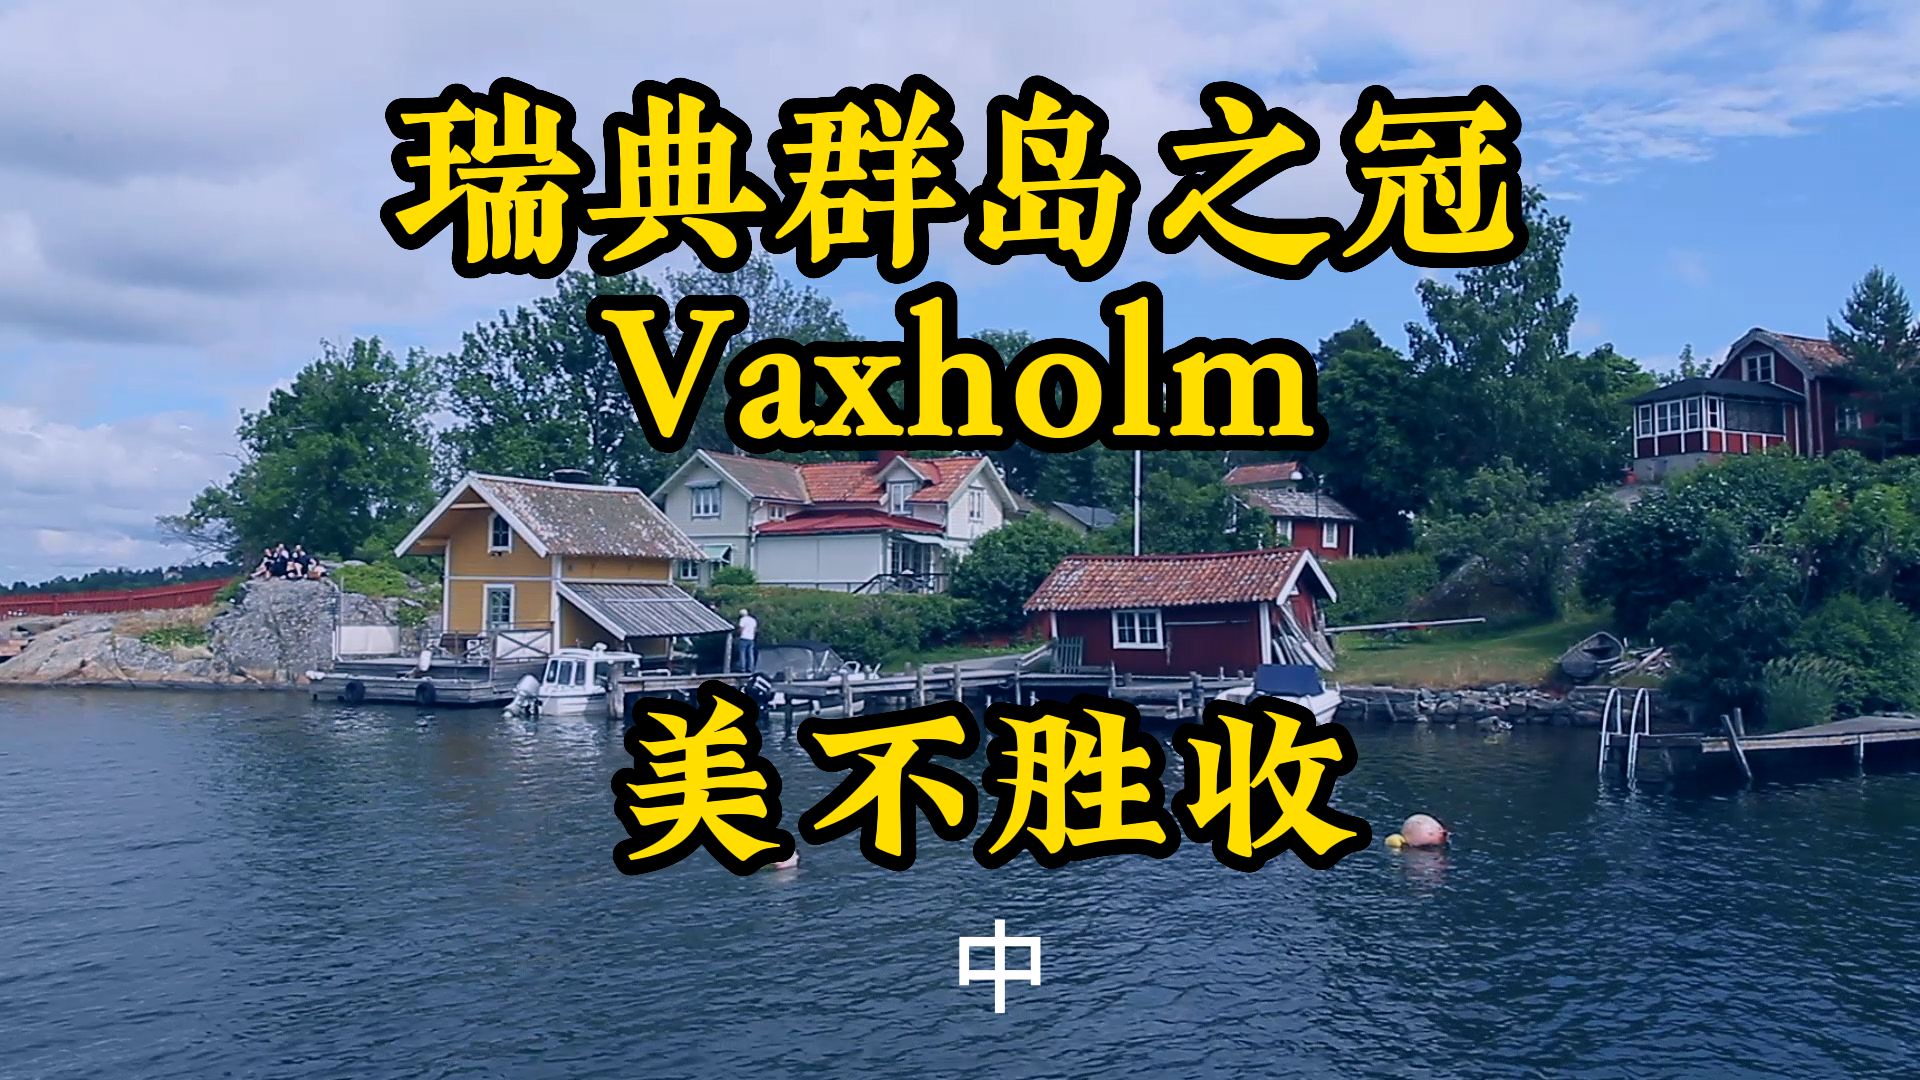 北欧瑞典旅行看美景 瓦克斯霍尔姆美如画2